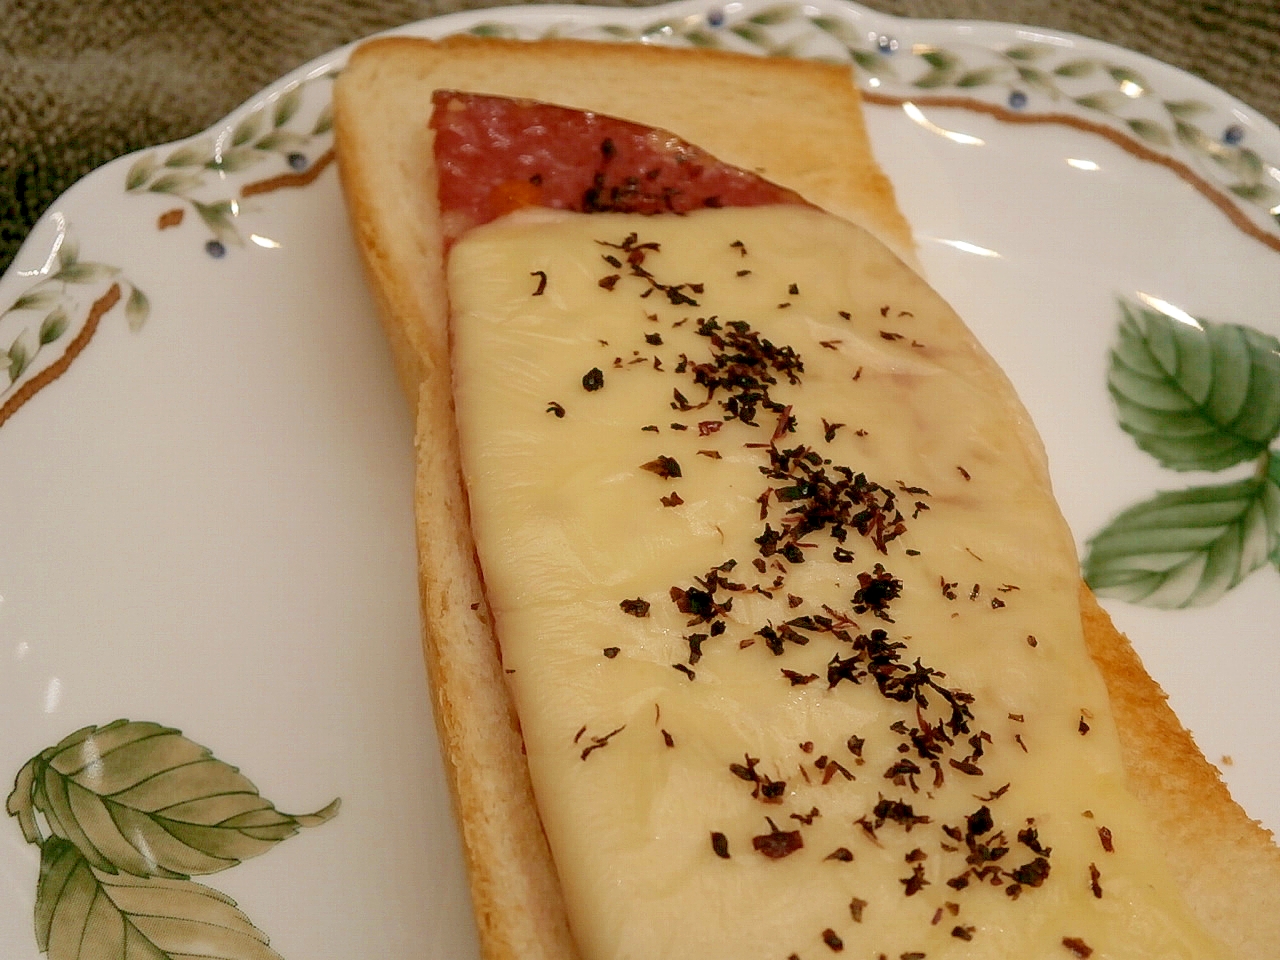 ボロニアソーセージとゆかりチーズのトースト